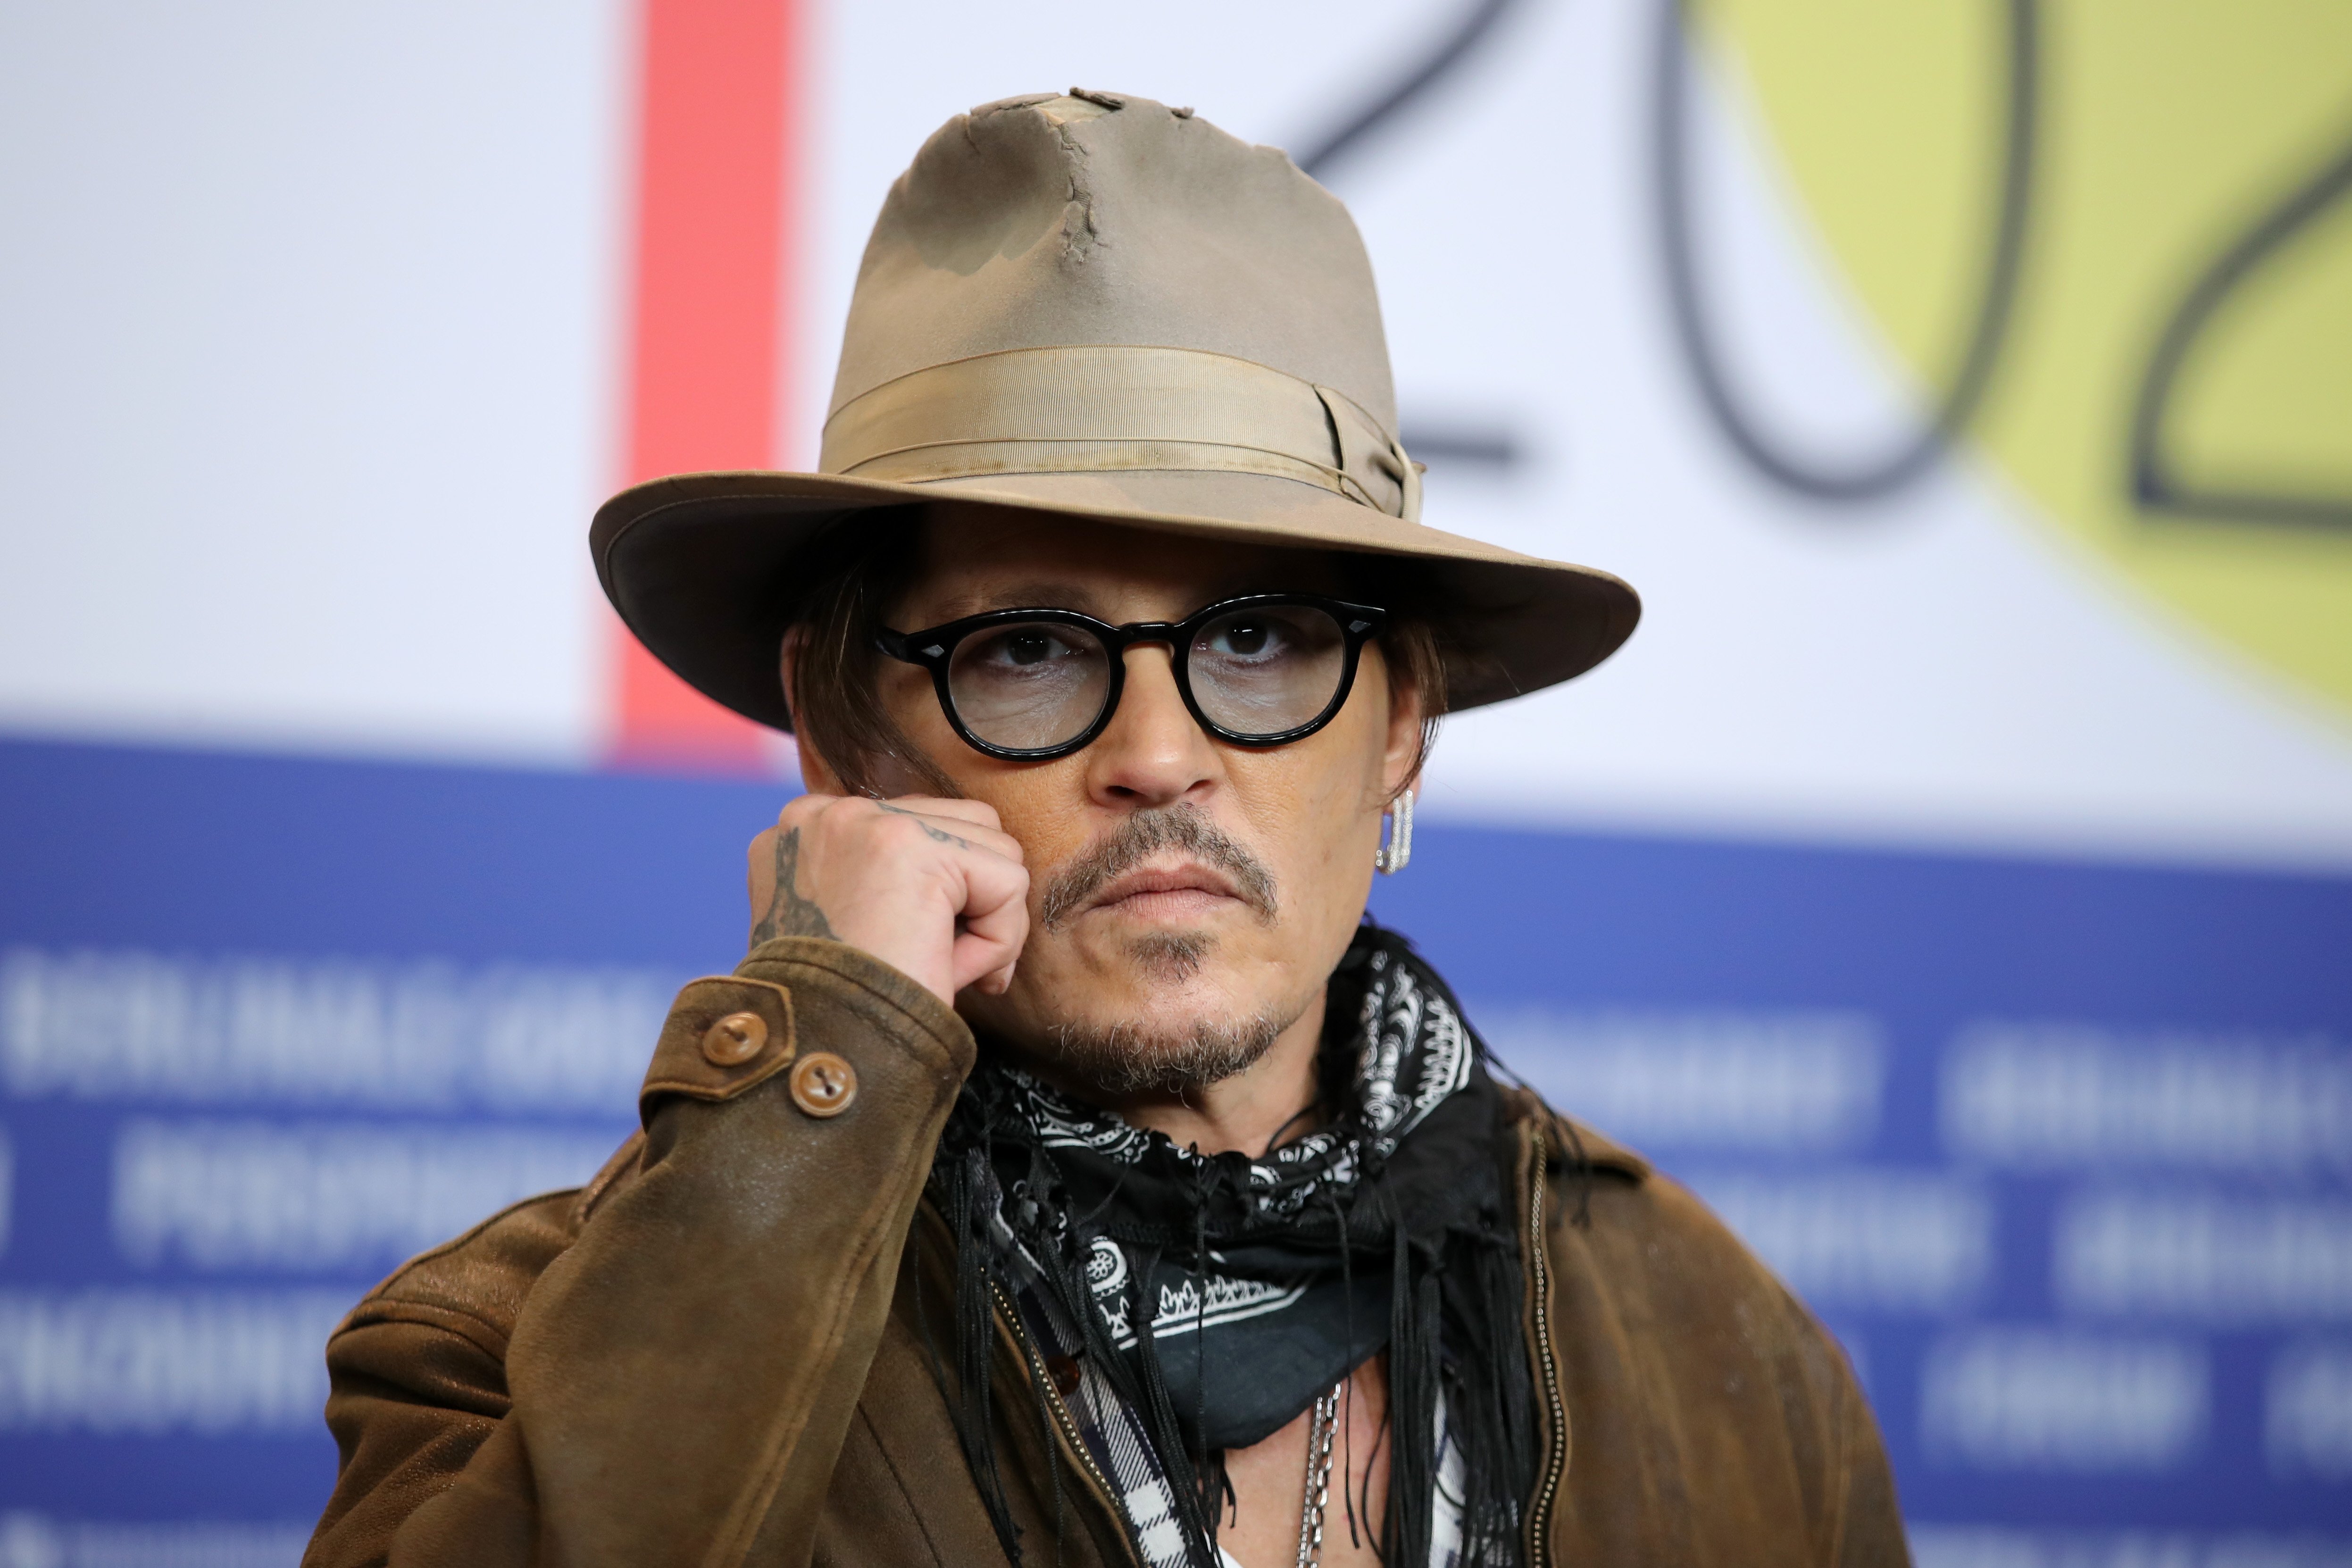 Johnny Depp es visto en la conferencia de prensa de "Minamata" durante el 70ª Berlinale Festival Internacional de Cine de Berlín en el Hotel Grand Hyatt el 21 de febrero de 2020 en Berlín, Alemania | Fuente: Getty Images